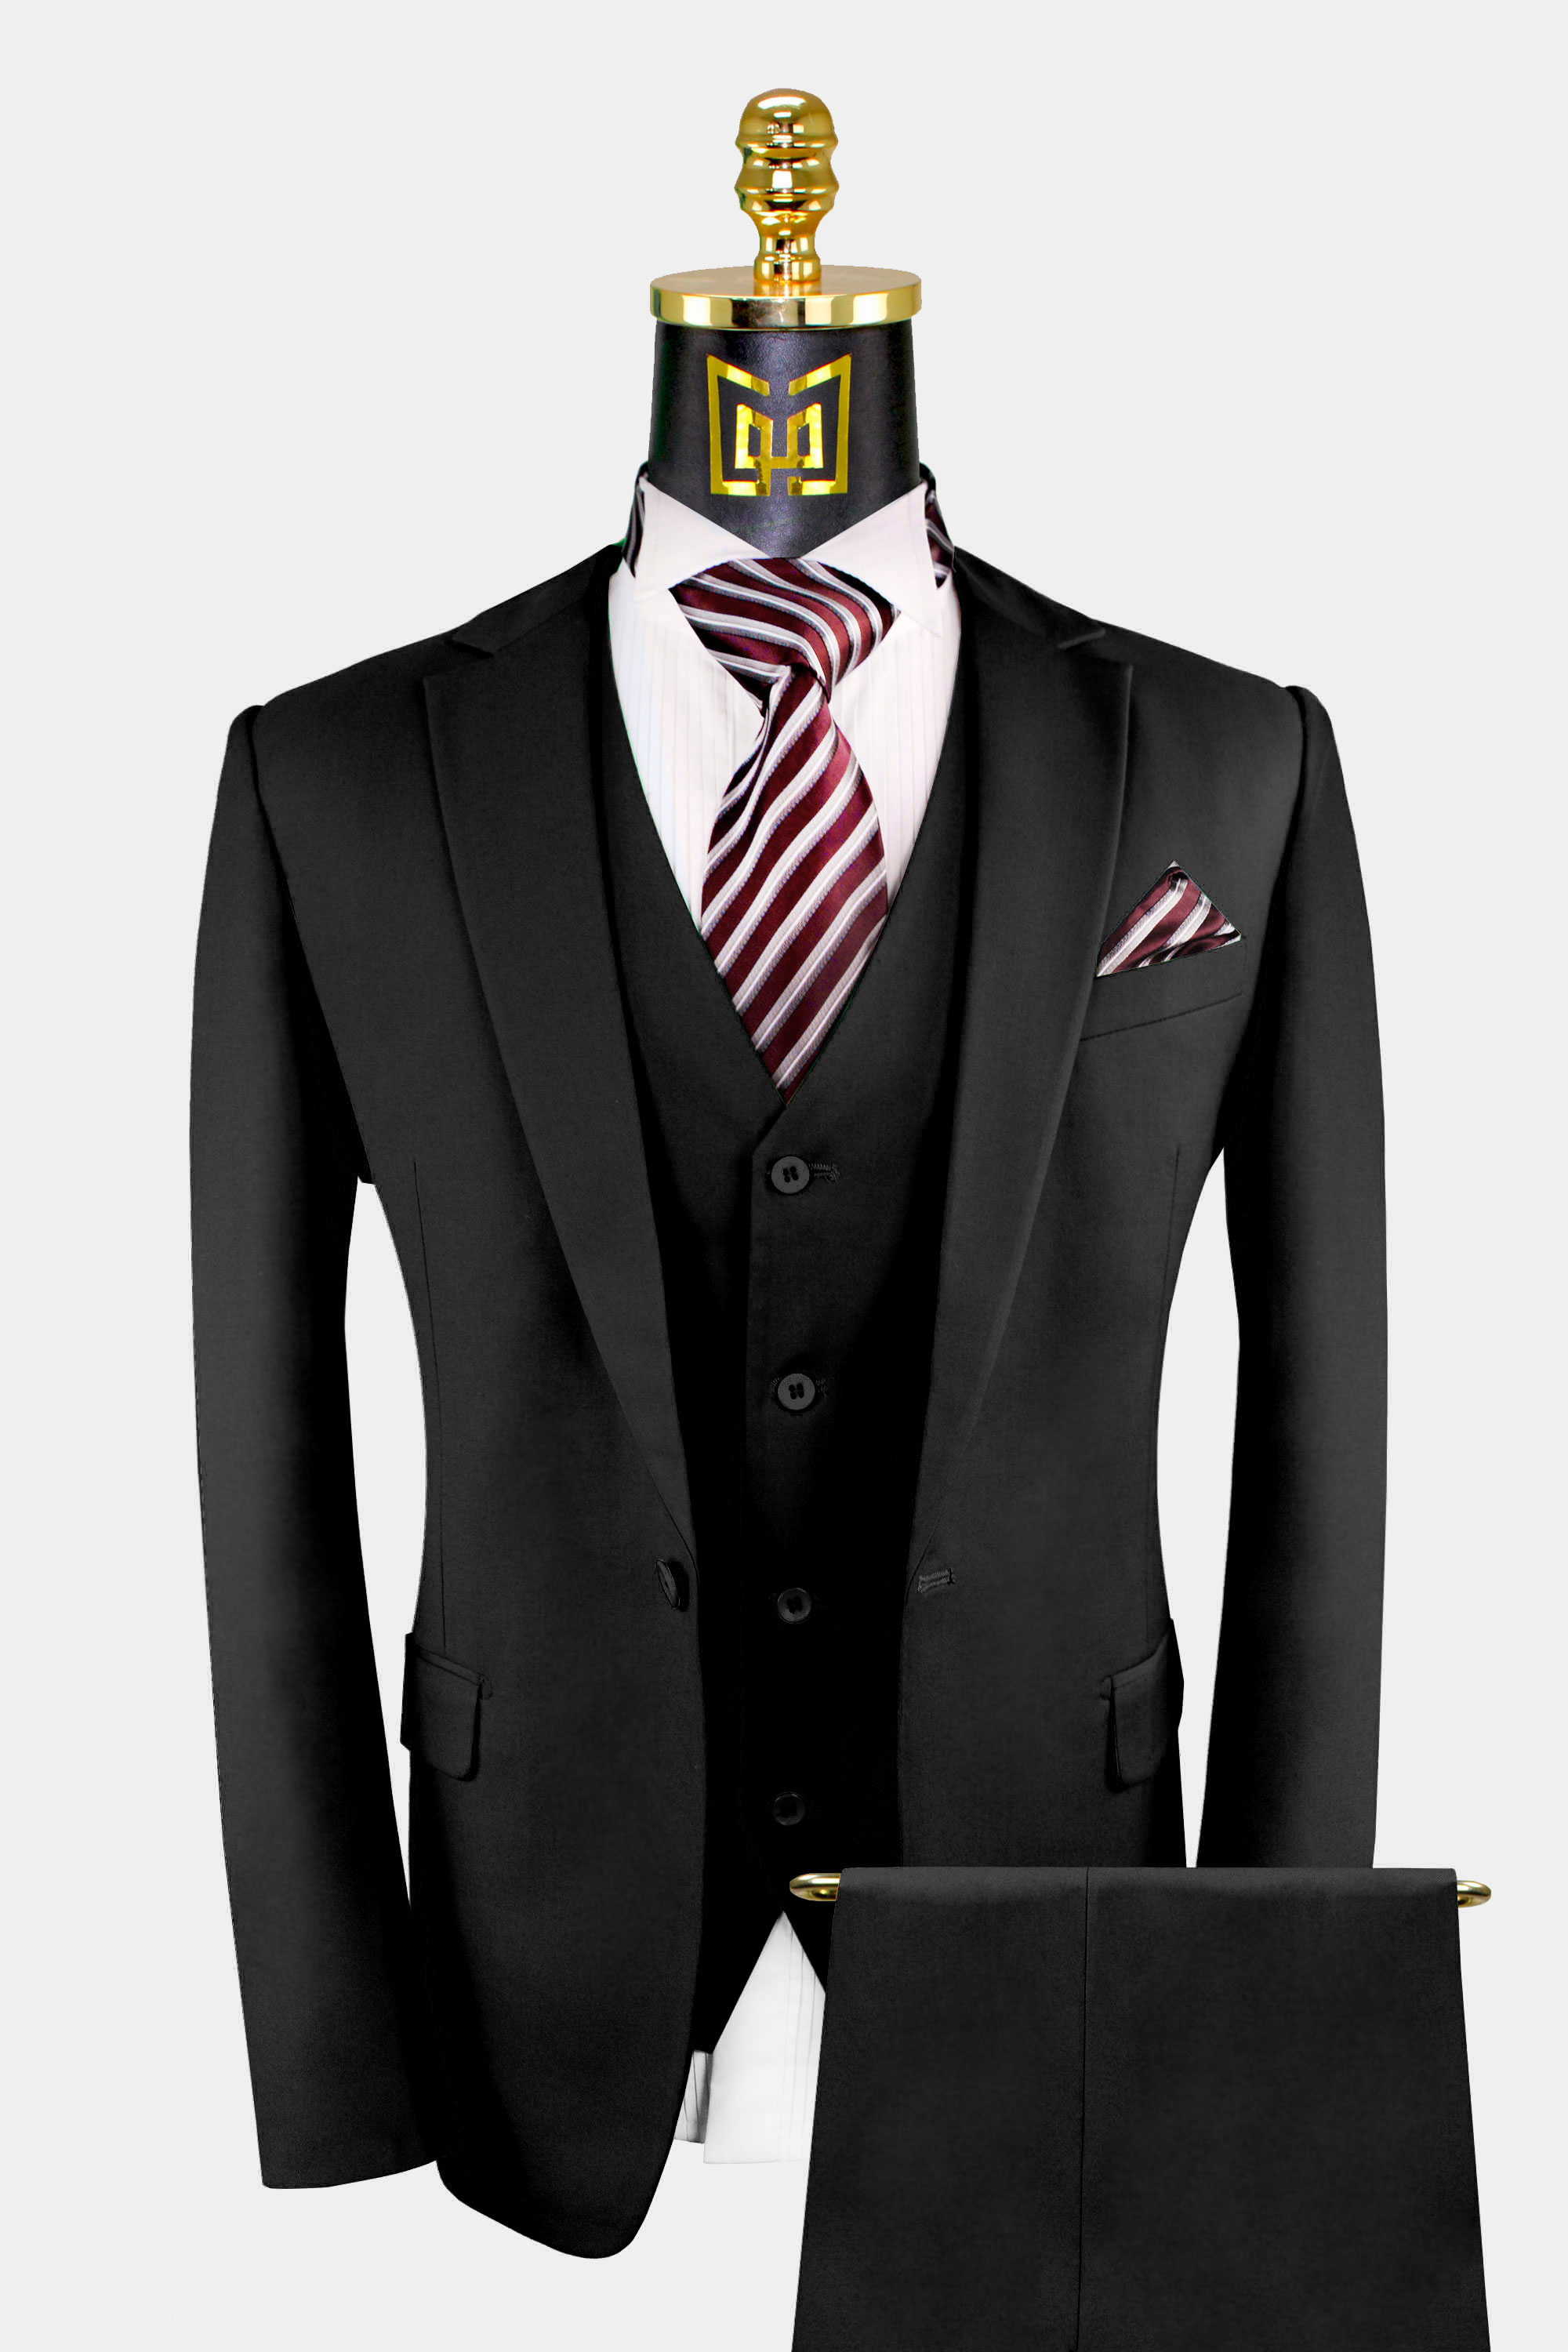 https://www.gentlemansguru.com/wp-content/uploads/2020/06/Mens-3Piece-Black-Suit-Groom-Wedding-Prom-Tuxedo-from-Gentlemansguru.com_.jpg